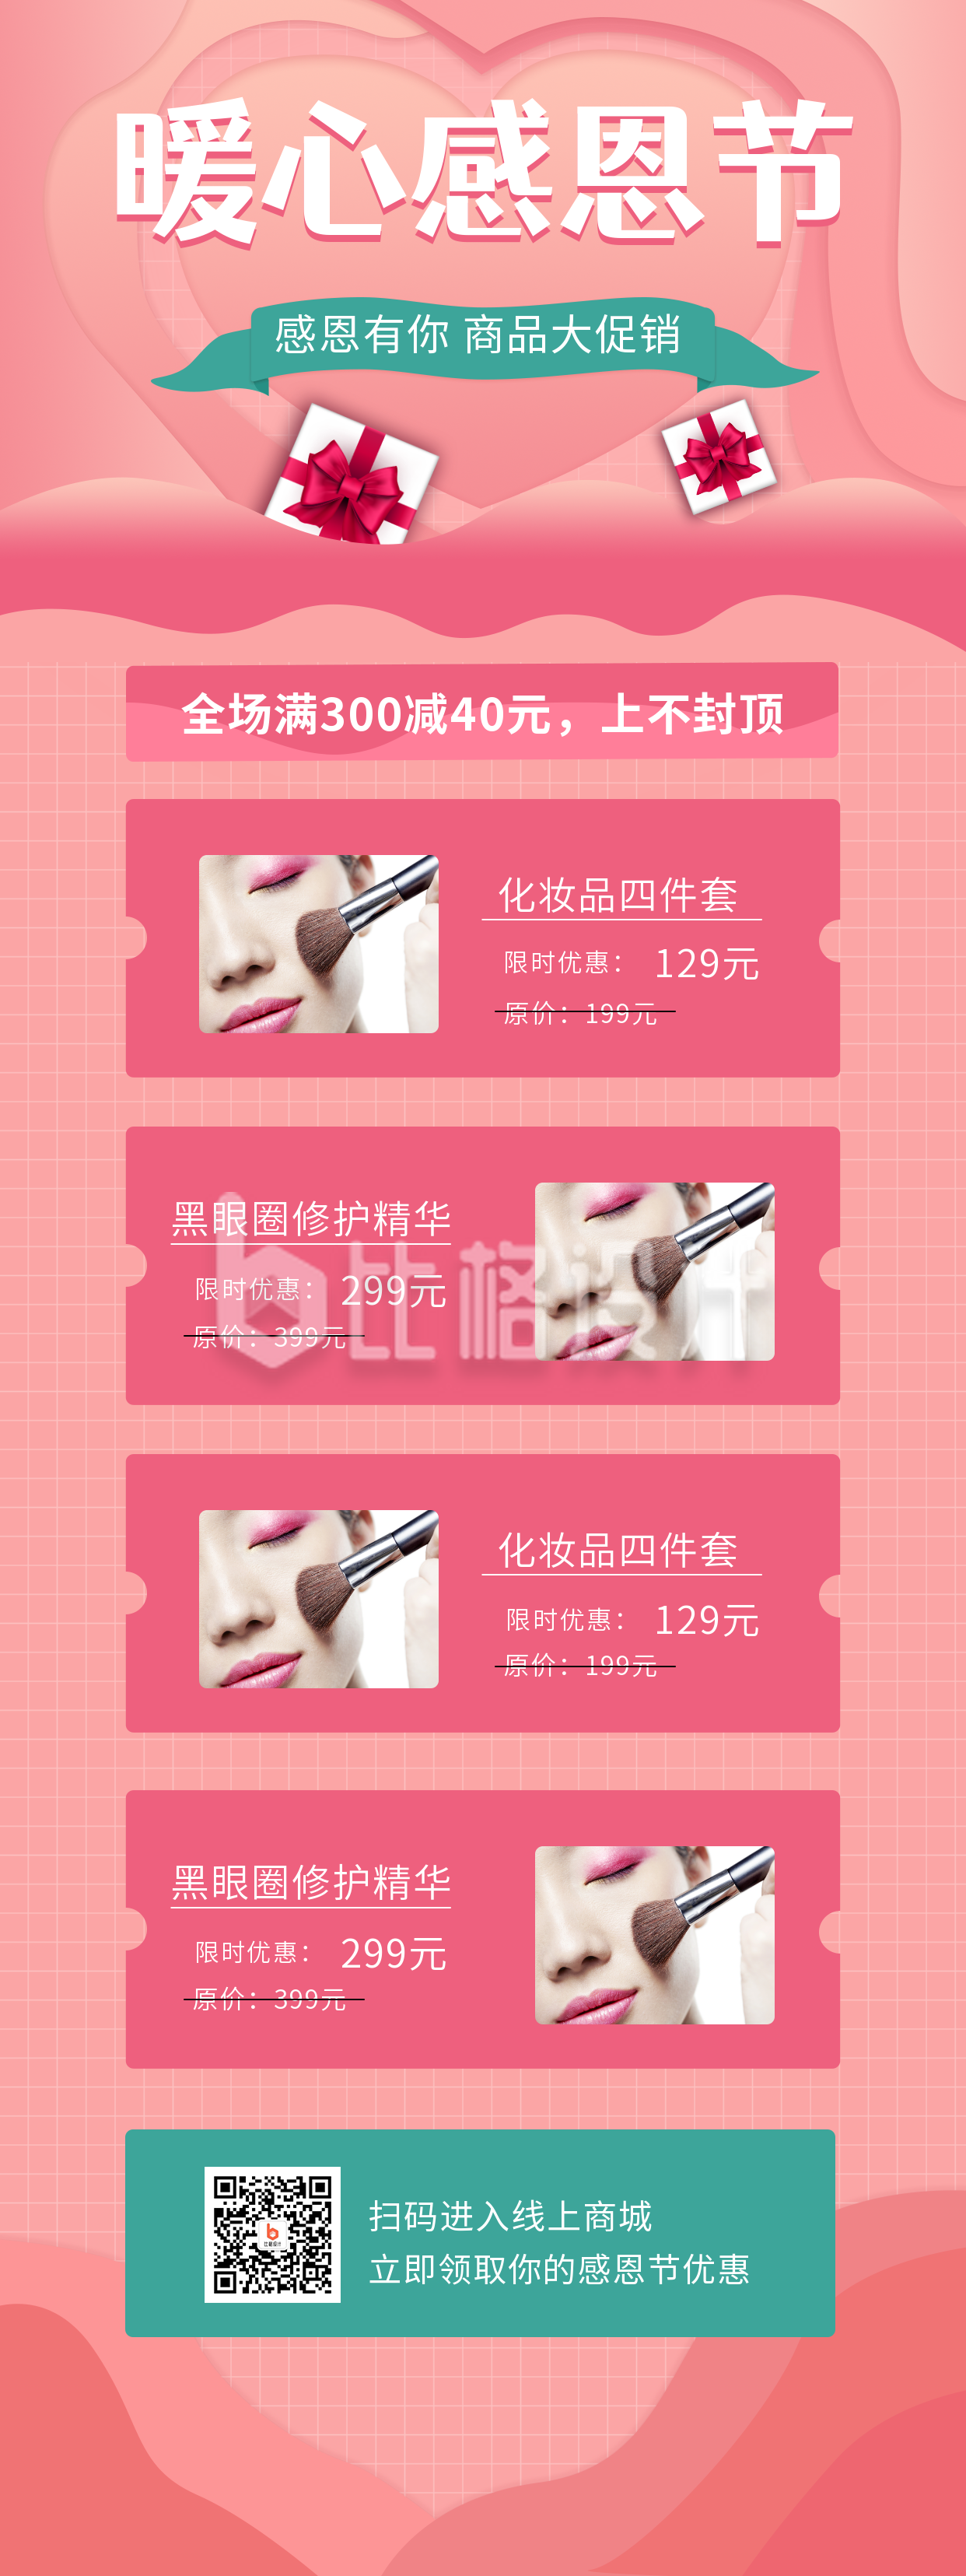 粉色剪纸风感恩节商品促销优惠活动手机海报